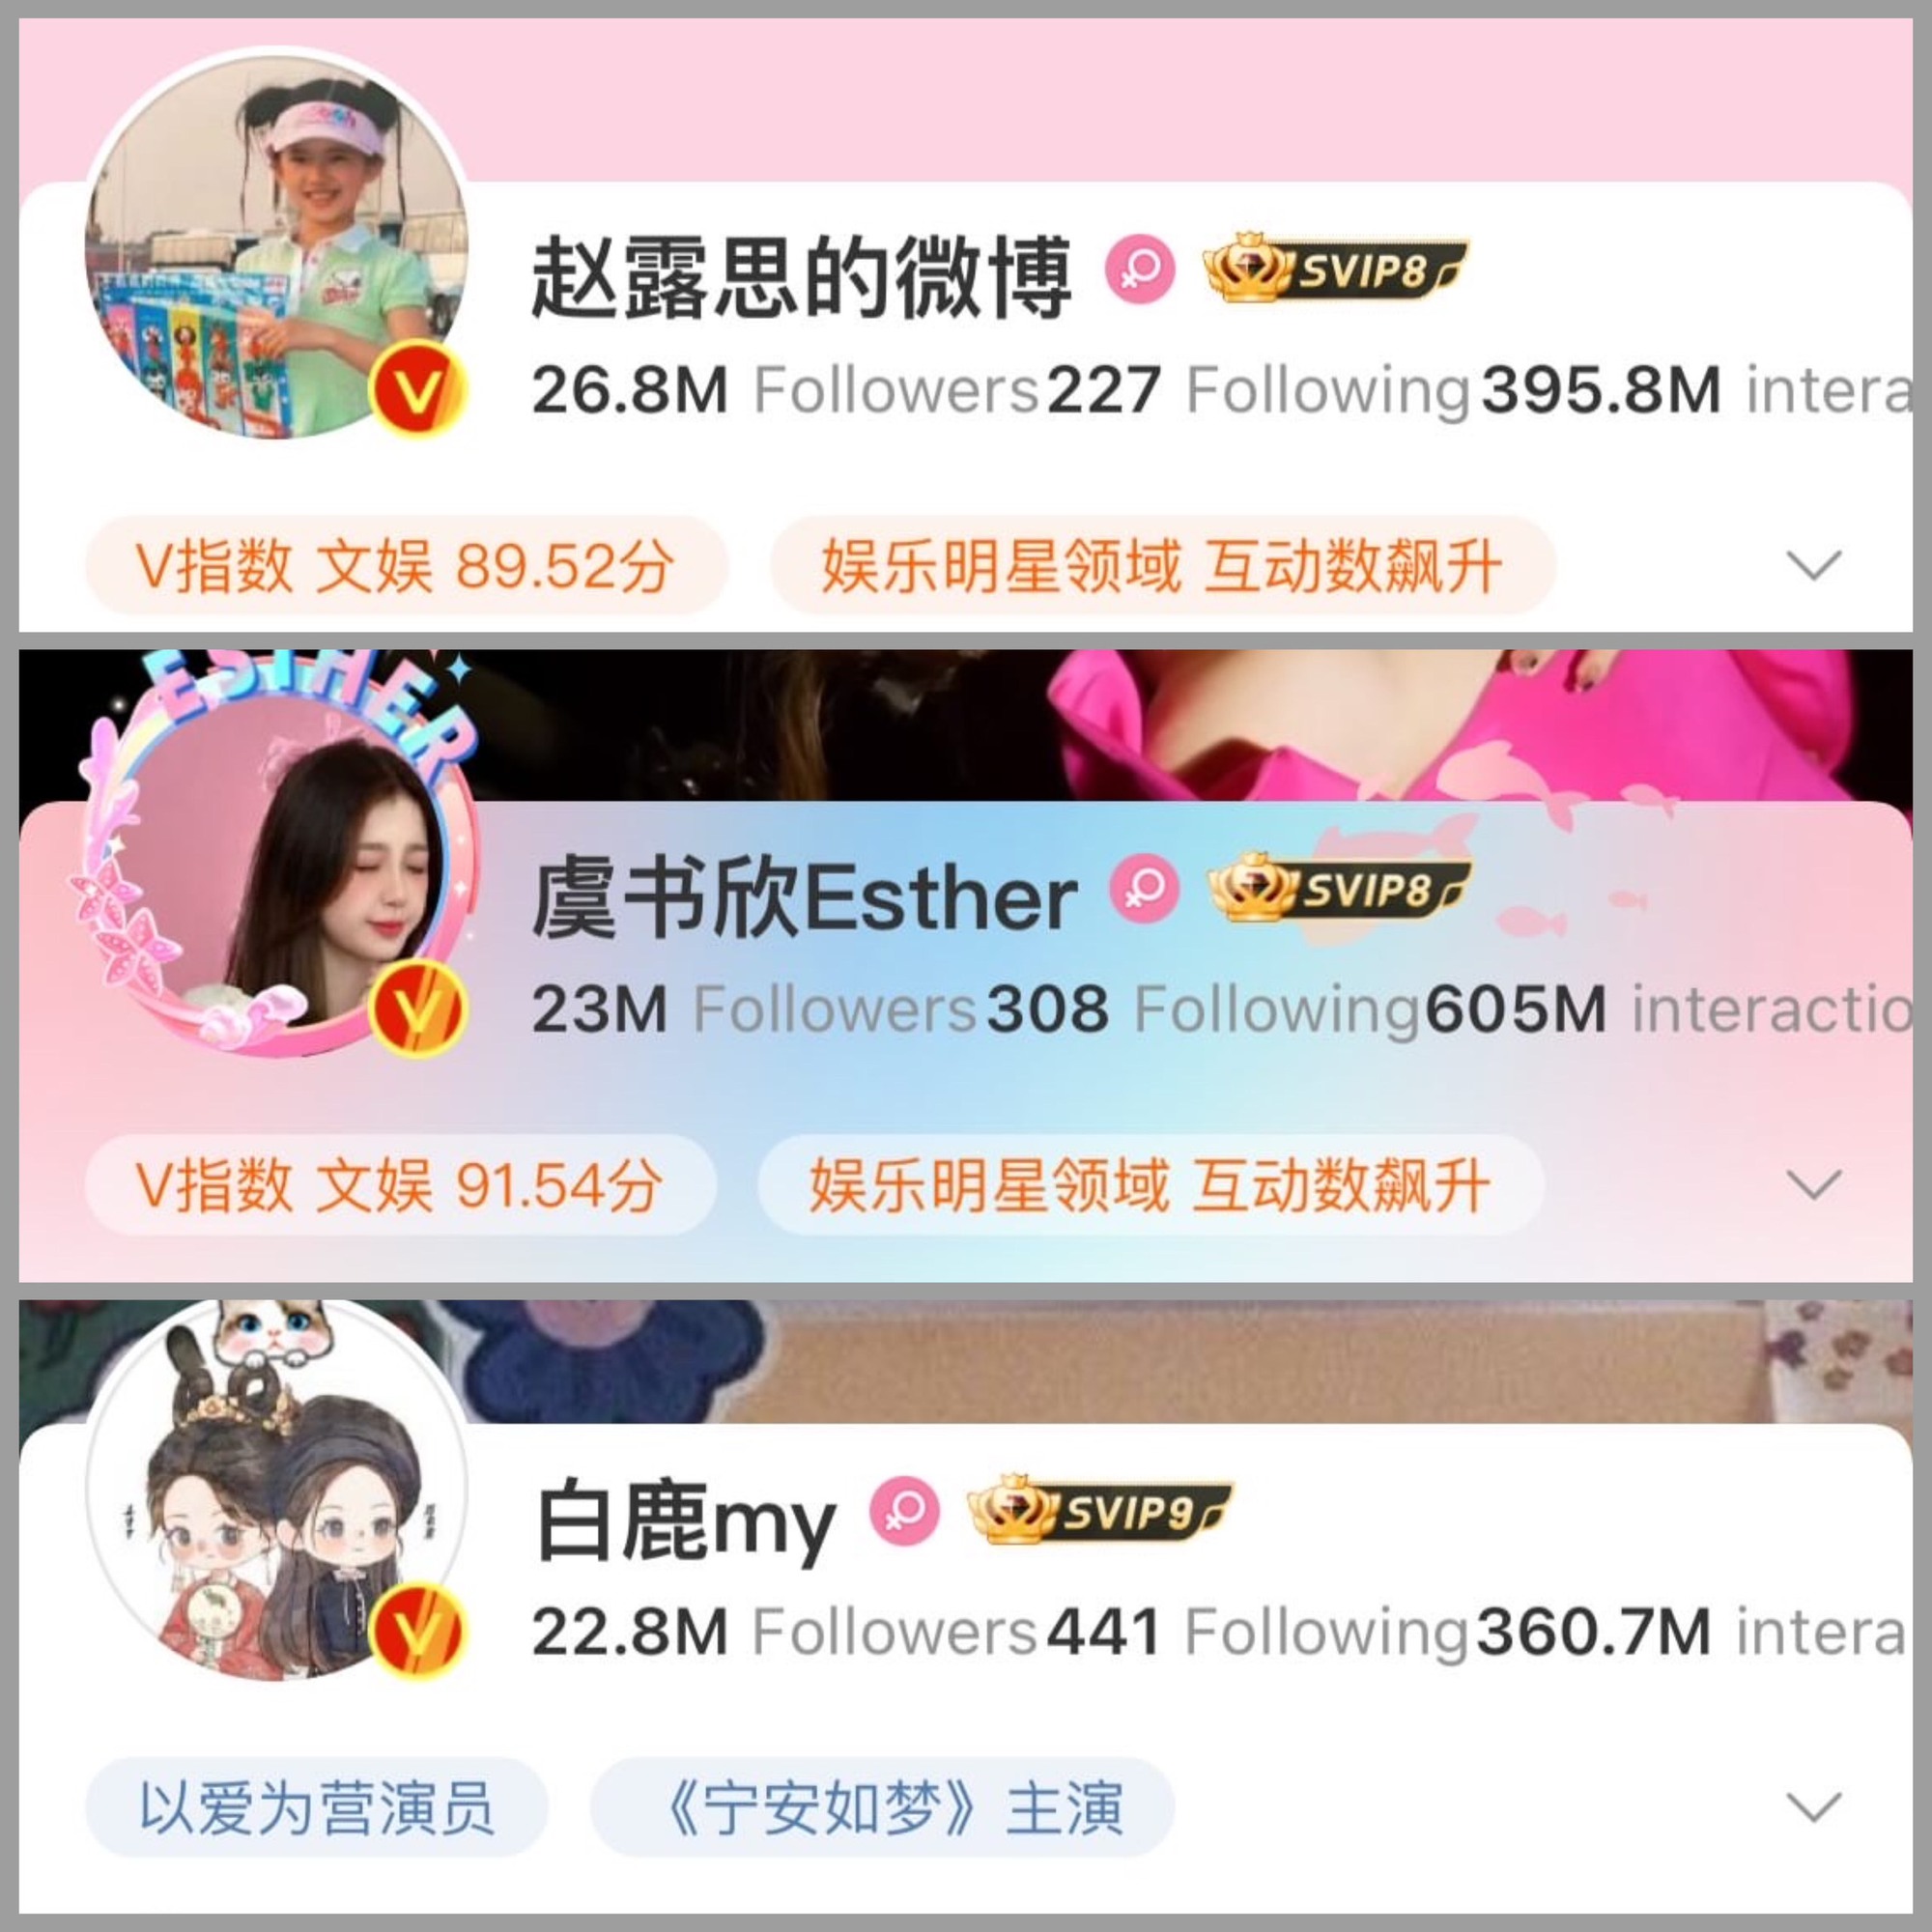 Trên mạng xã hội Weibo, Triệu Lộ Tư dẫn đầu lượt followers với 26,8 triệu người theo dõi cùng 295,8 triệu lượt yêu thích. Đứng top 2 là Ngu Thư Hân chiếm 23 triệu người theo dõi cùng 605 triệu lượt yêu thích vượt trội bất ngờ. Xếp cuối cùng là Bạch Lộc với 22,8 triệu lượt theo dõi cùng 360,7 triệu lượt yêu thích.